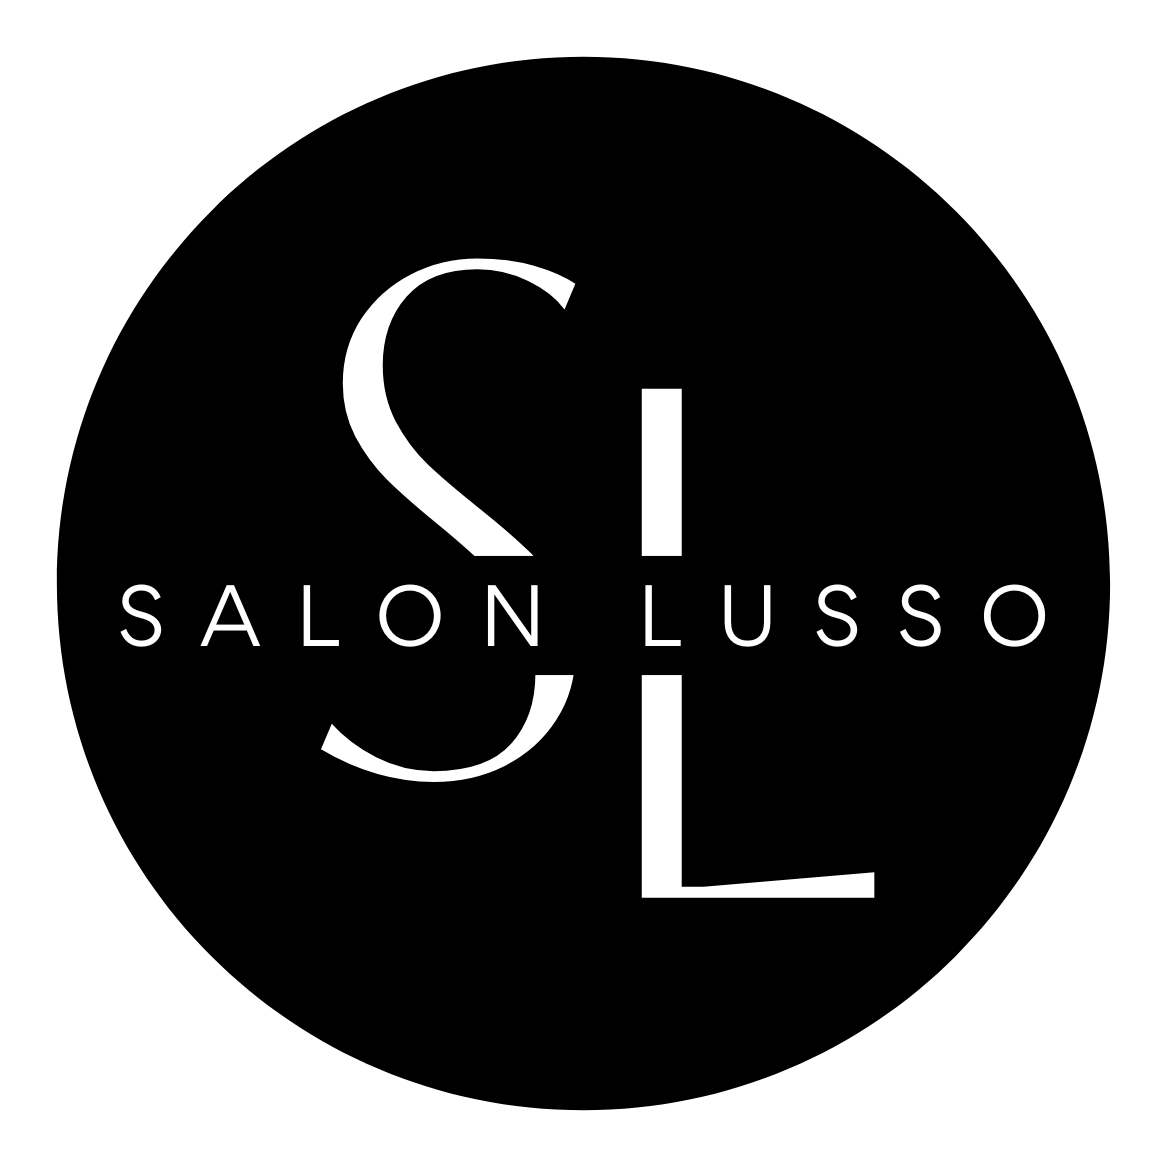 Salon Lusso of Naples